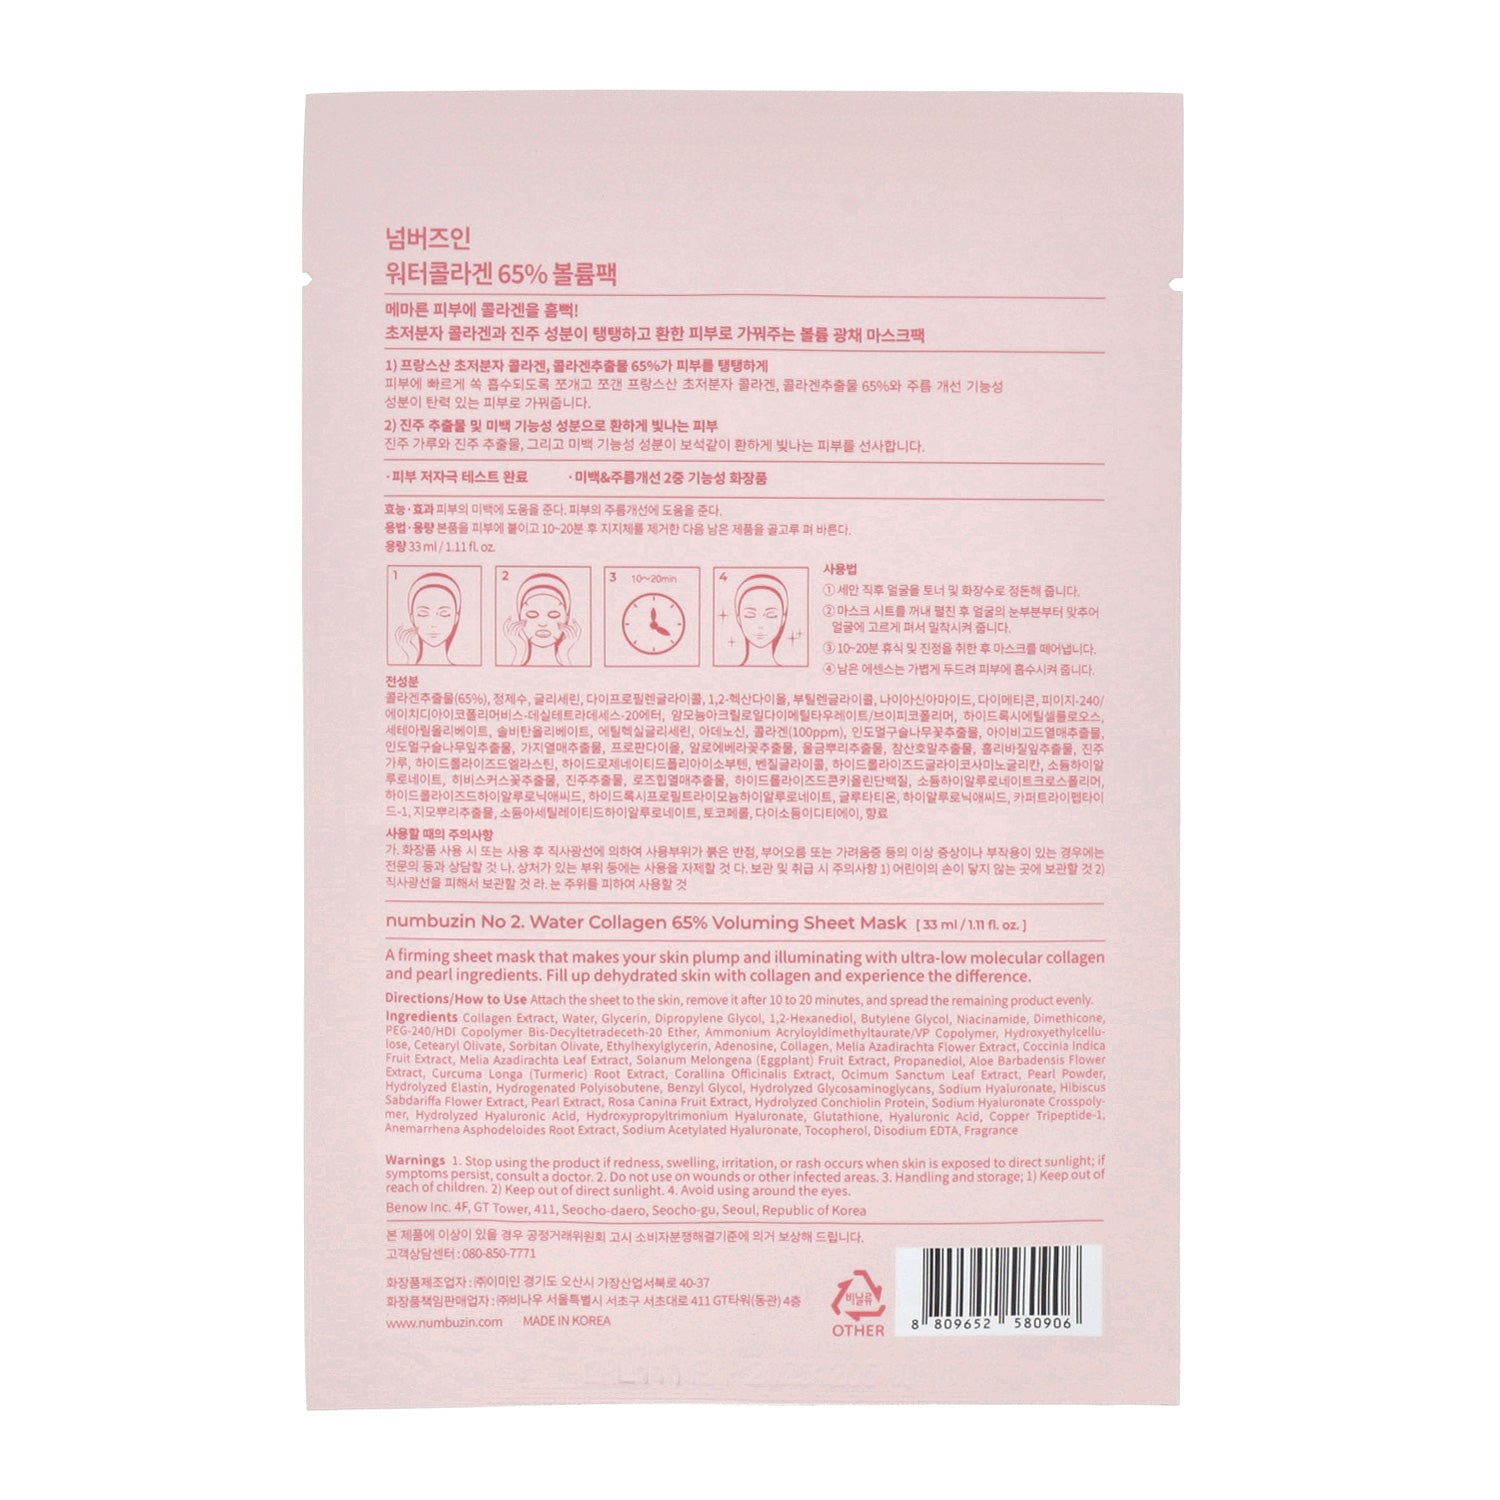 numbuzin No.2 Water Collagen 65% Voluming Sheet Mask 4ea